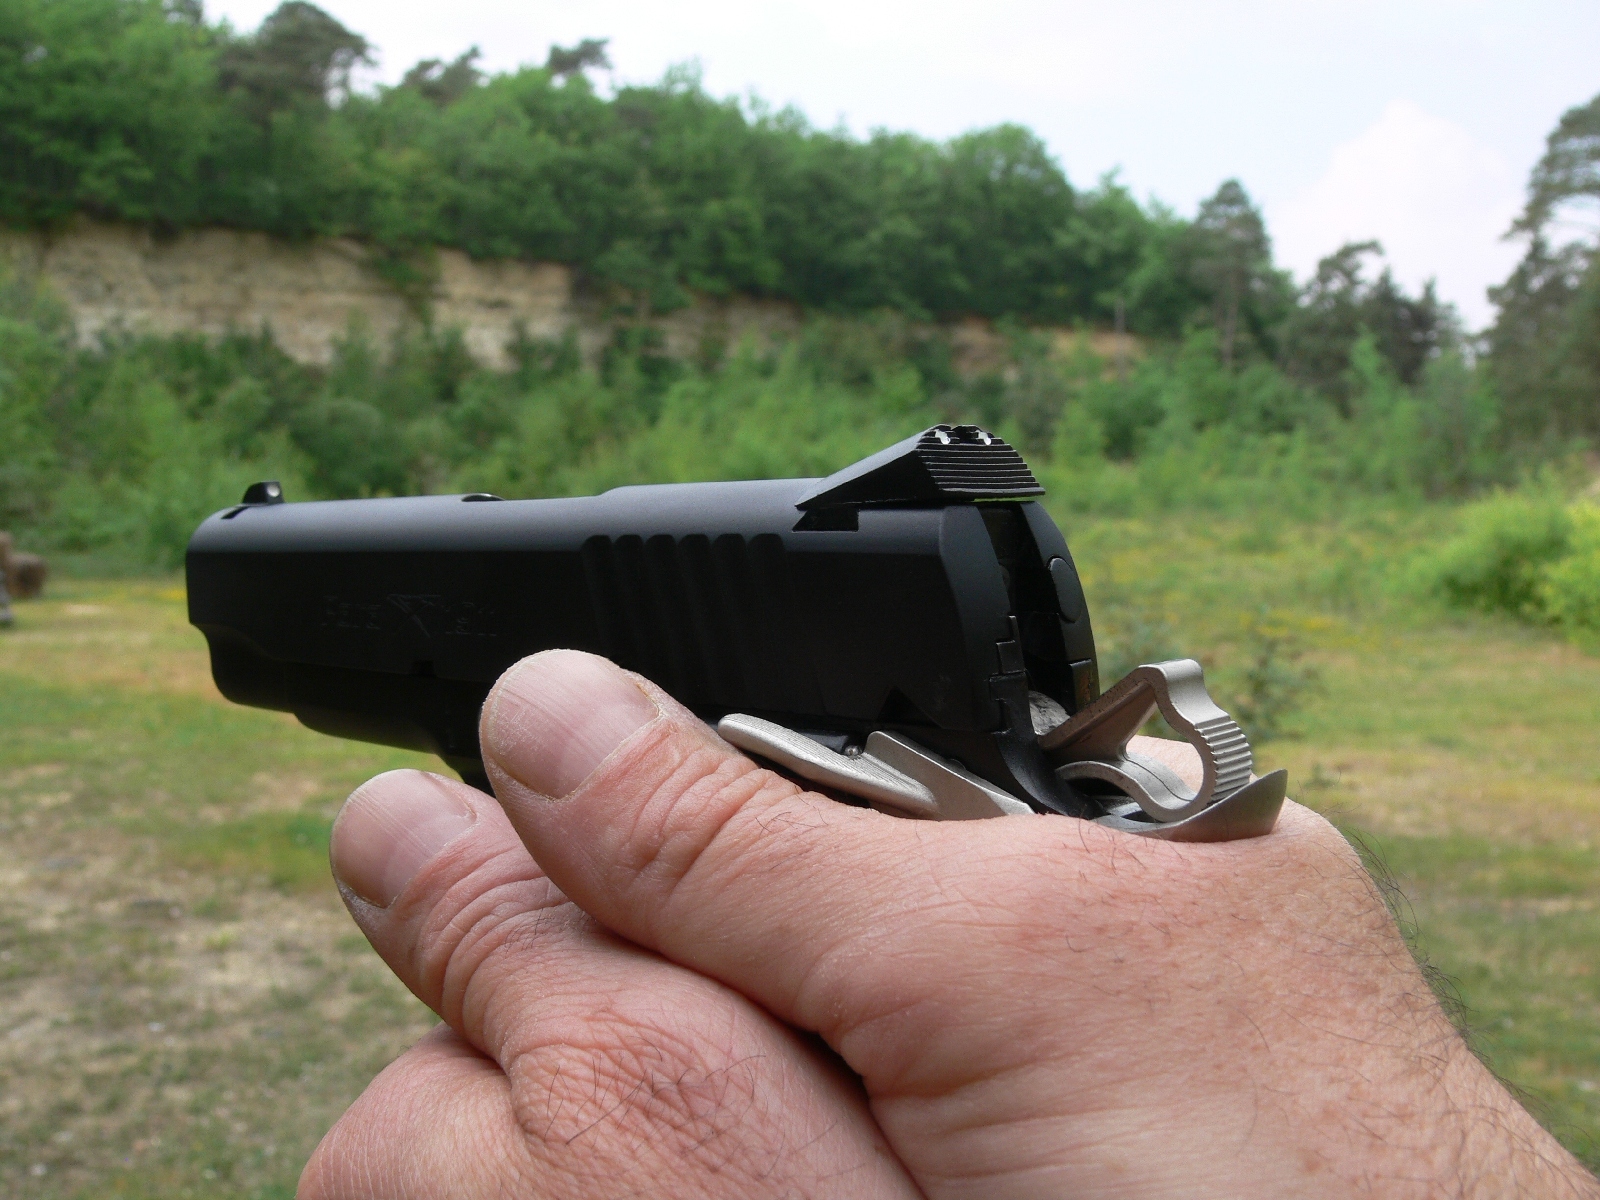 Pistolet Para-Ordnance modèle 1911 LTC en calibre .45 ACP lors de notre banc d'essai réalisé en 2008.